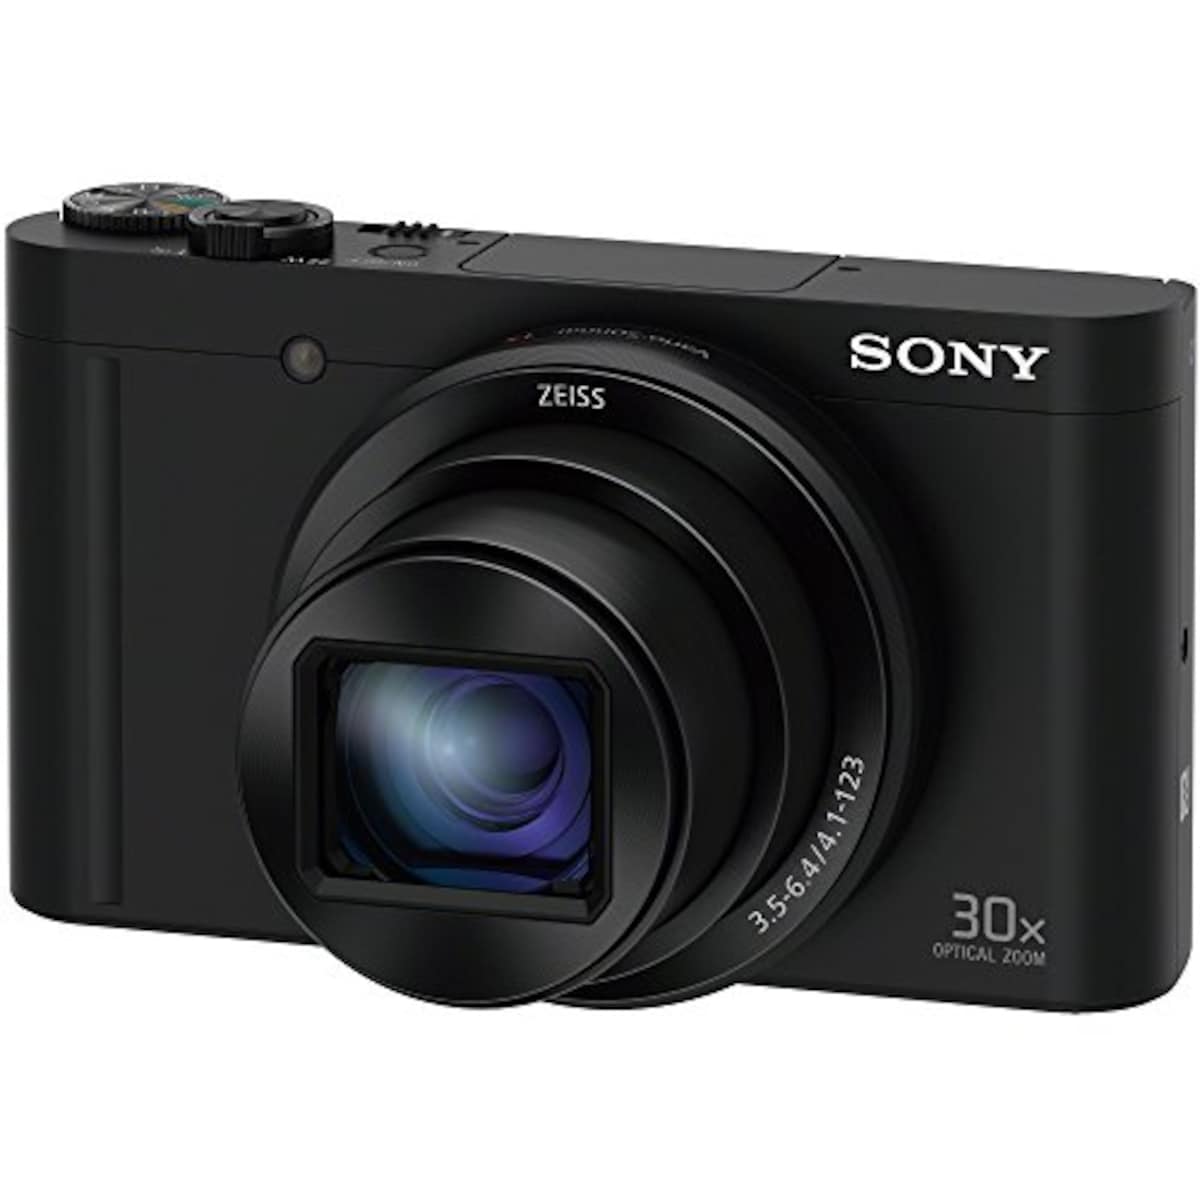  【WX500 と ジャケットケース セット】 大切なカメラをキズや汚れからガードしたい方に。DSC-WX500 ブラック + LCJ-HWA画像4 